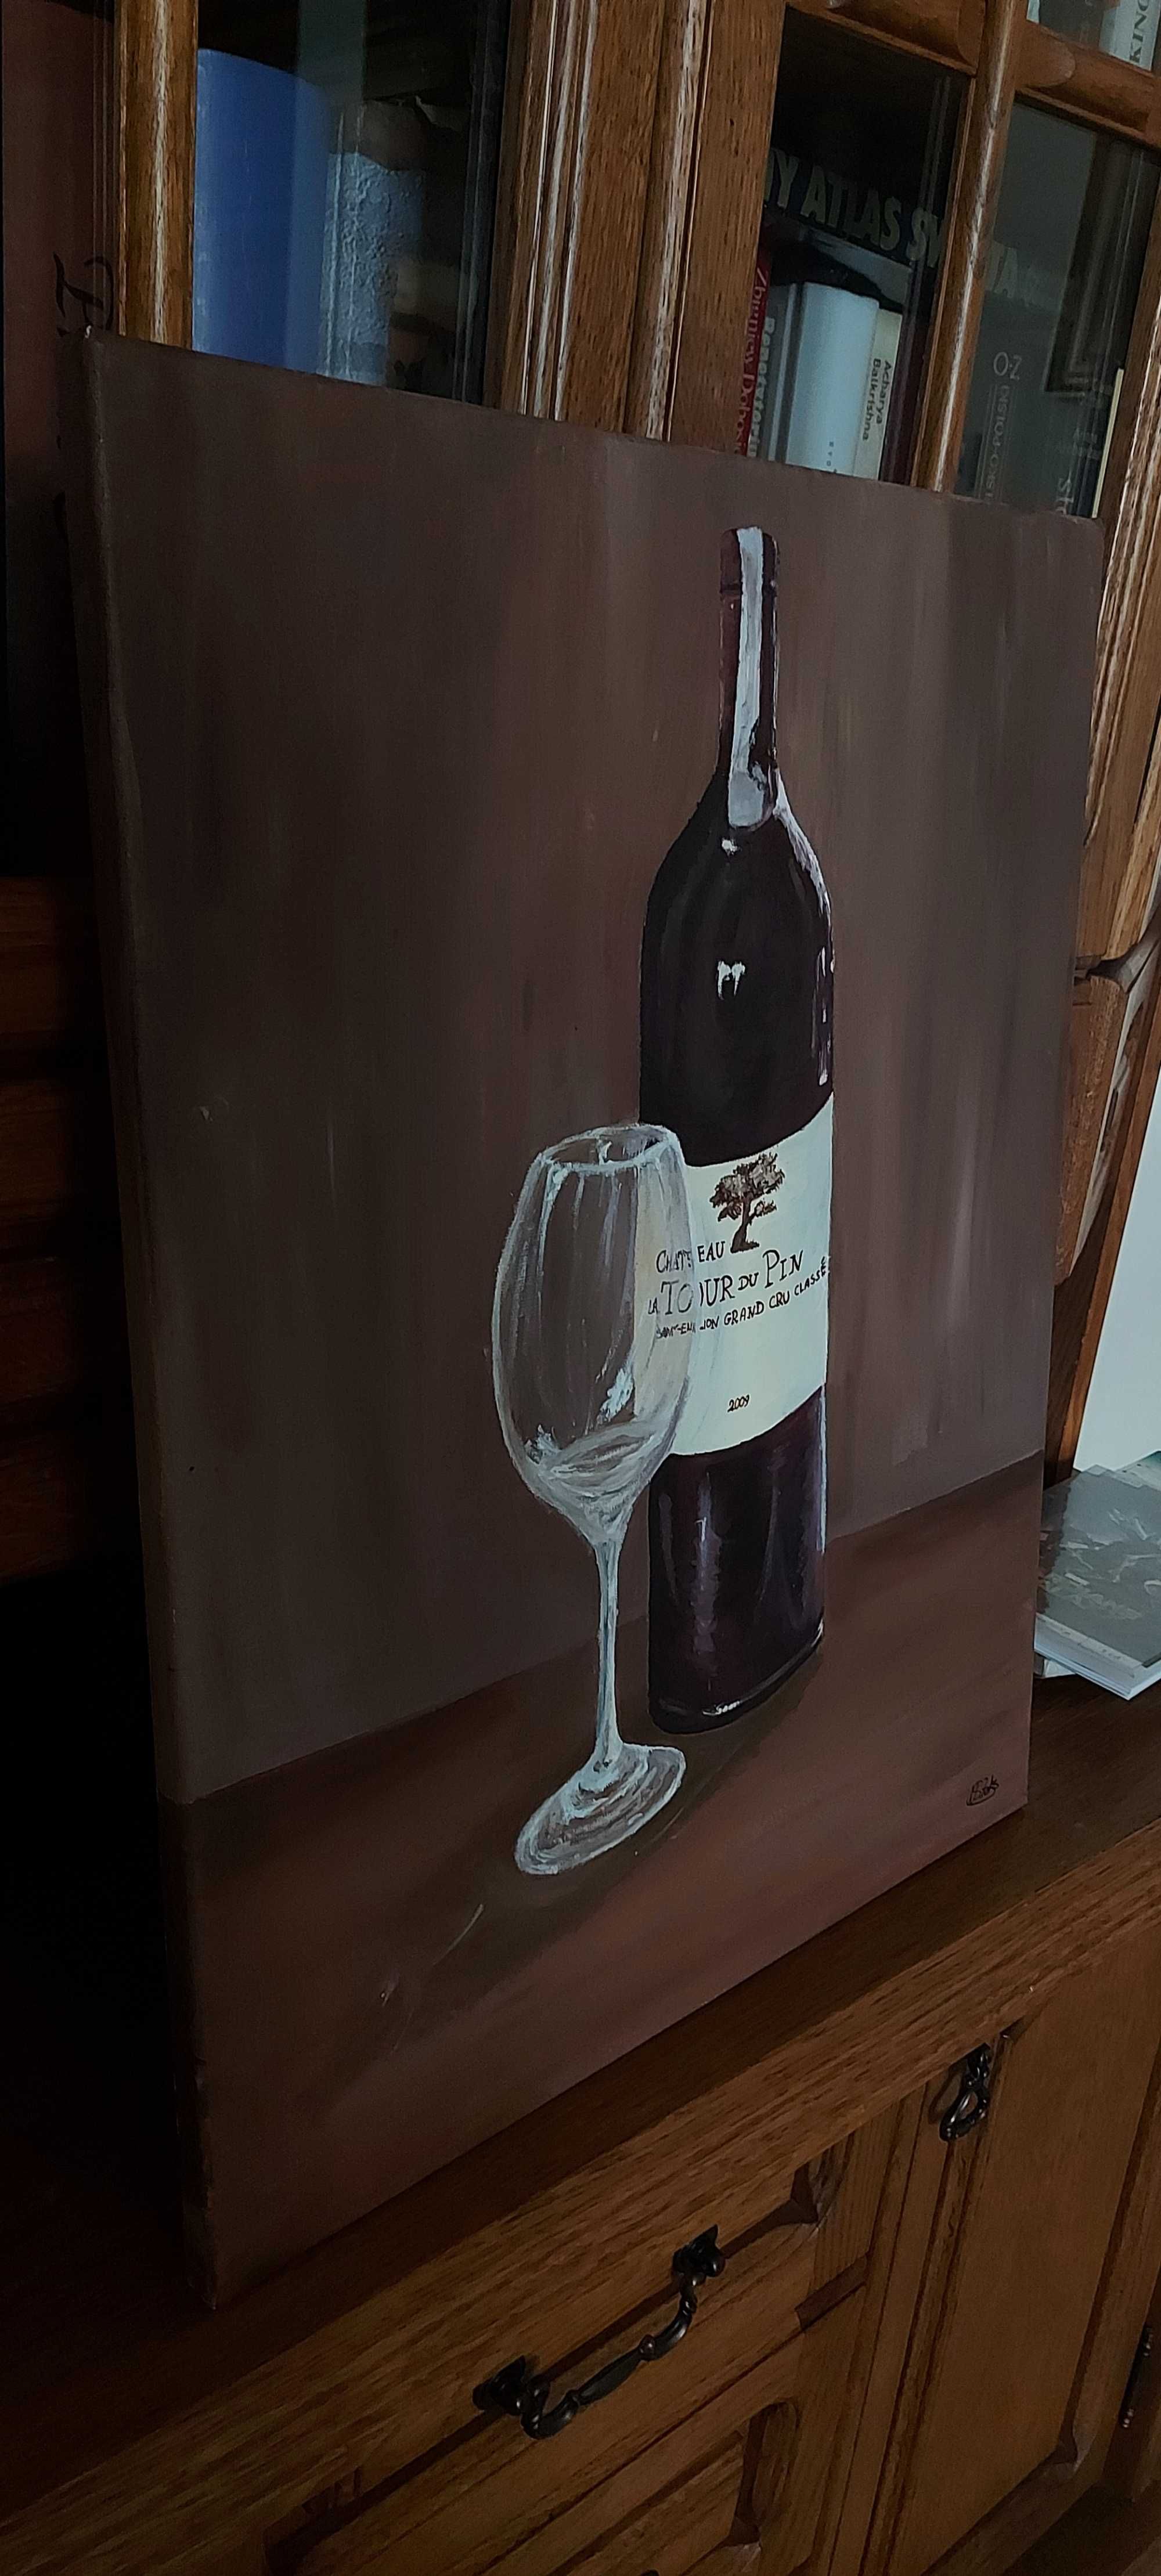 Obraz olejny ,,Red wine" idealny do nowoczesnego wnętrza